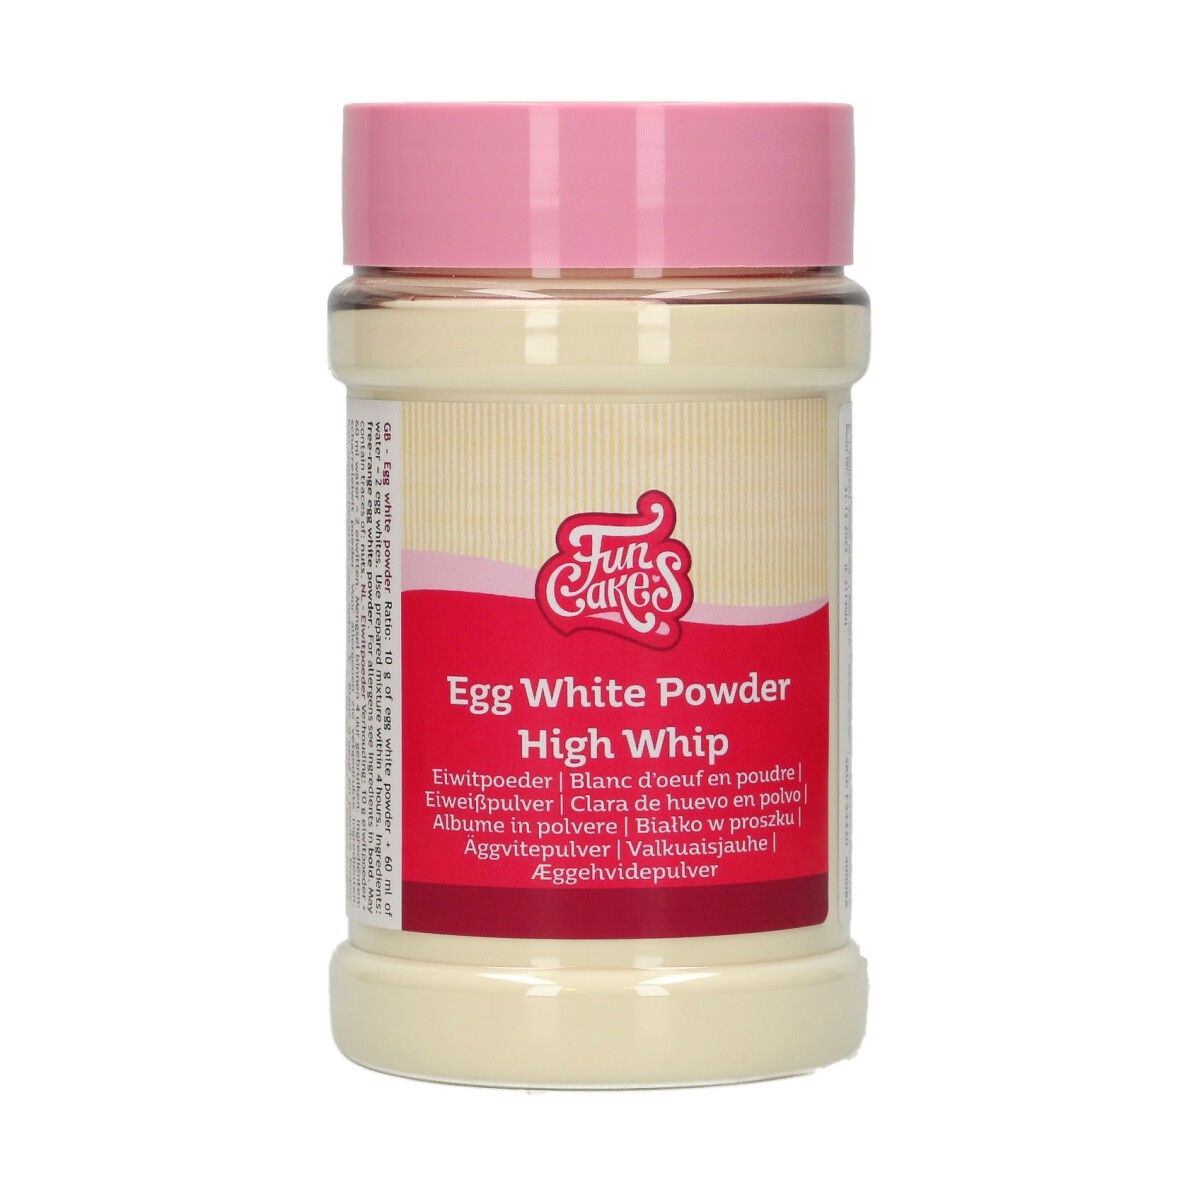 Se Egg White Powder "High Whip" 125 g hos BageTid.dk